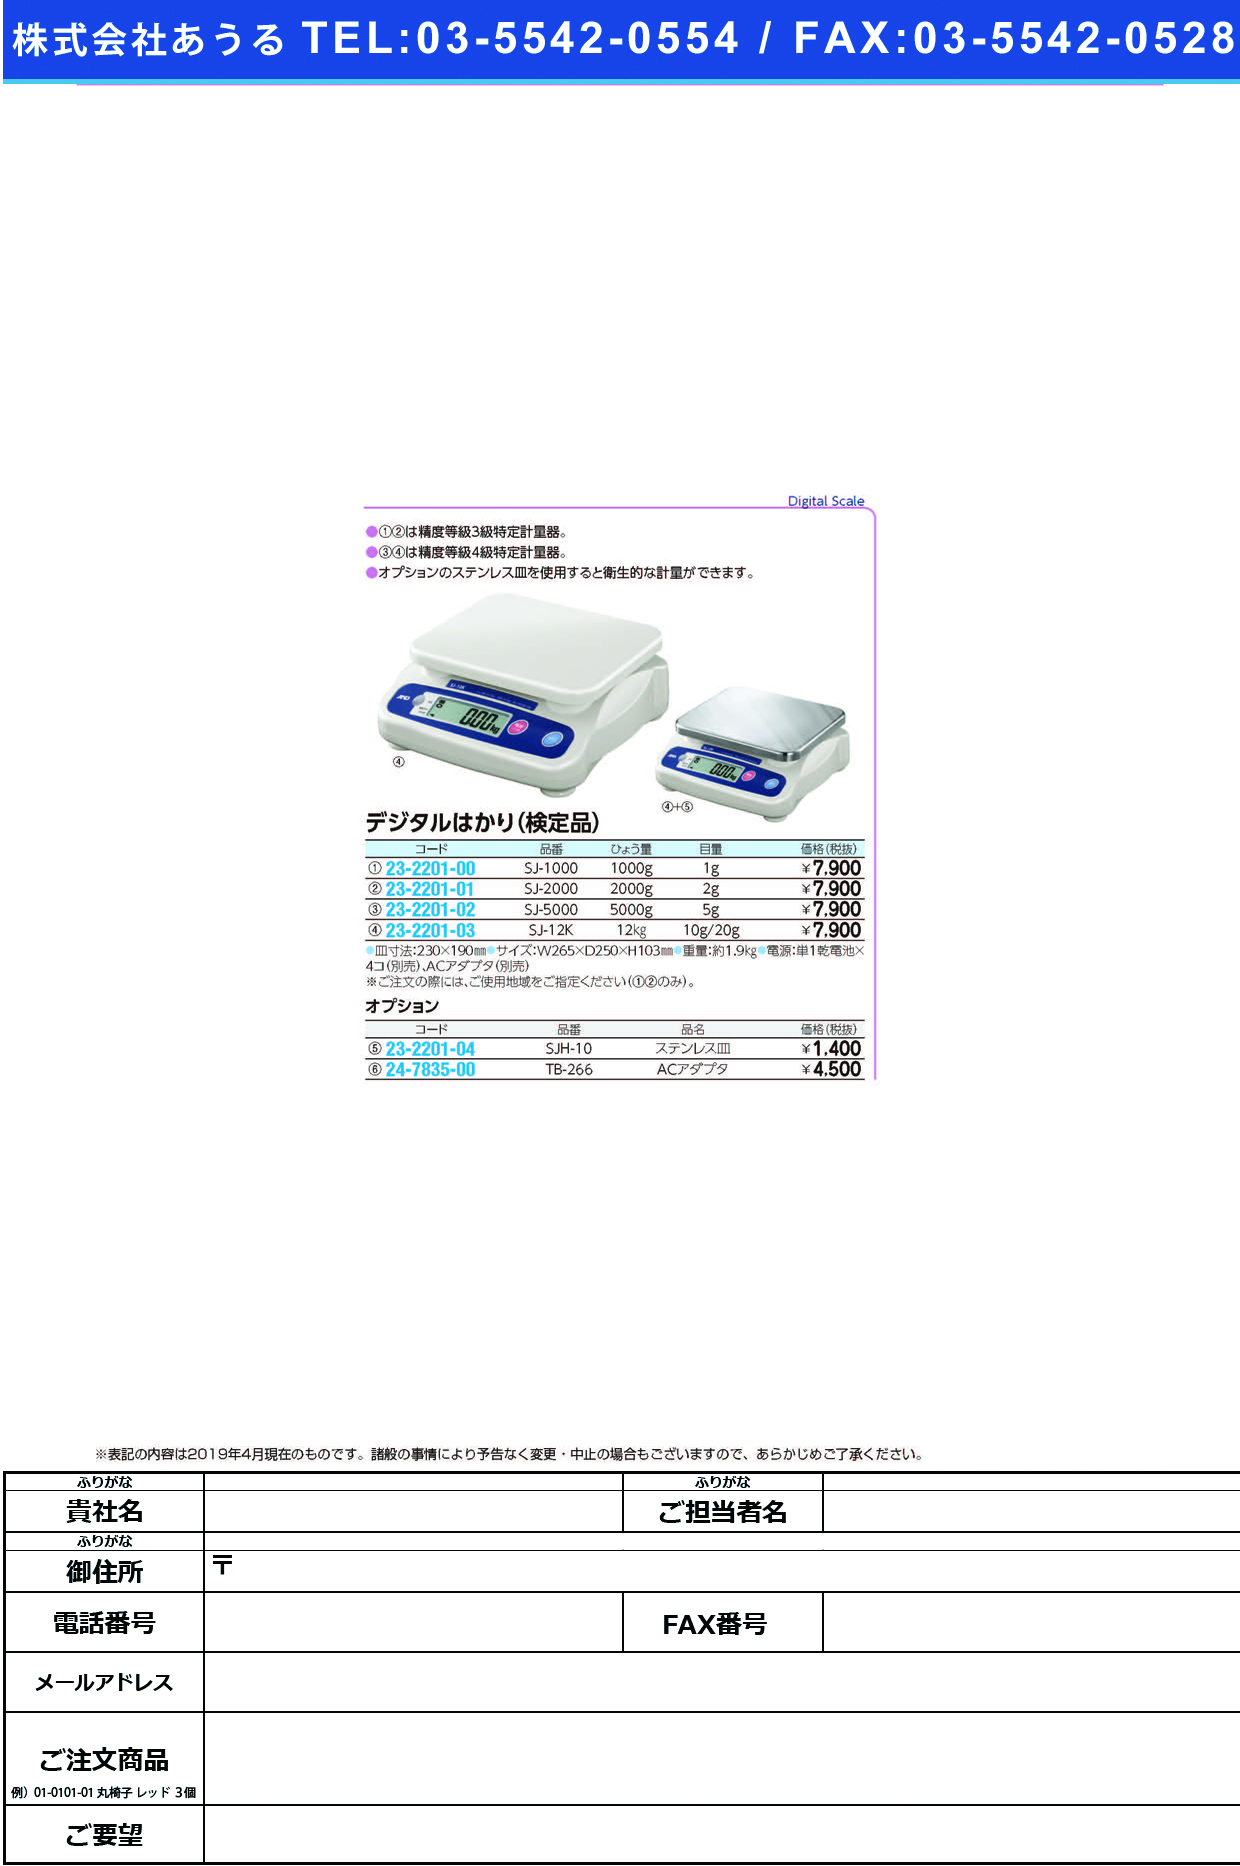 (23-2201-03)デジタルはかり（検定品） SJ-12K ﾃﾞｼﾞﾀﾙﾊｶﾘ(ｹﾝﾃｲﾋﾝ)【1台単位】【2019年カタログ商品】